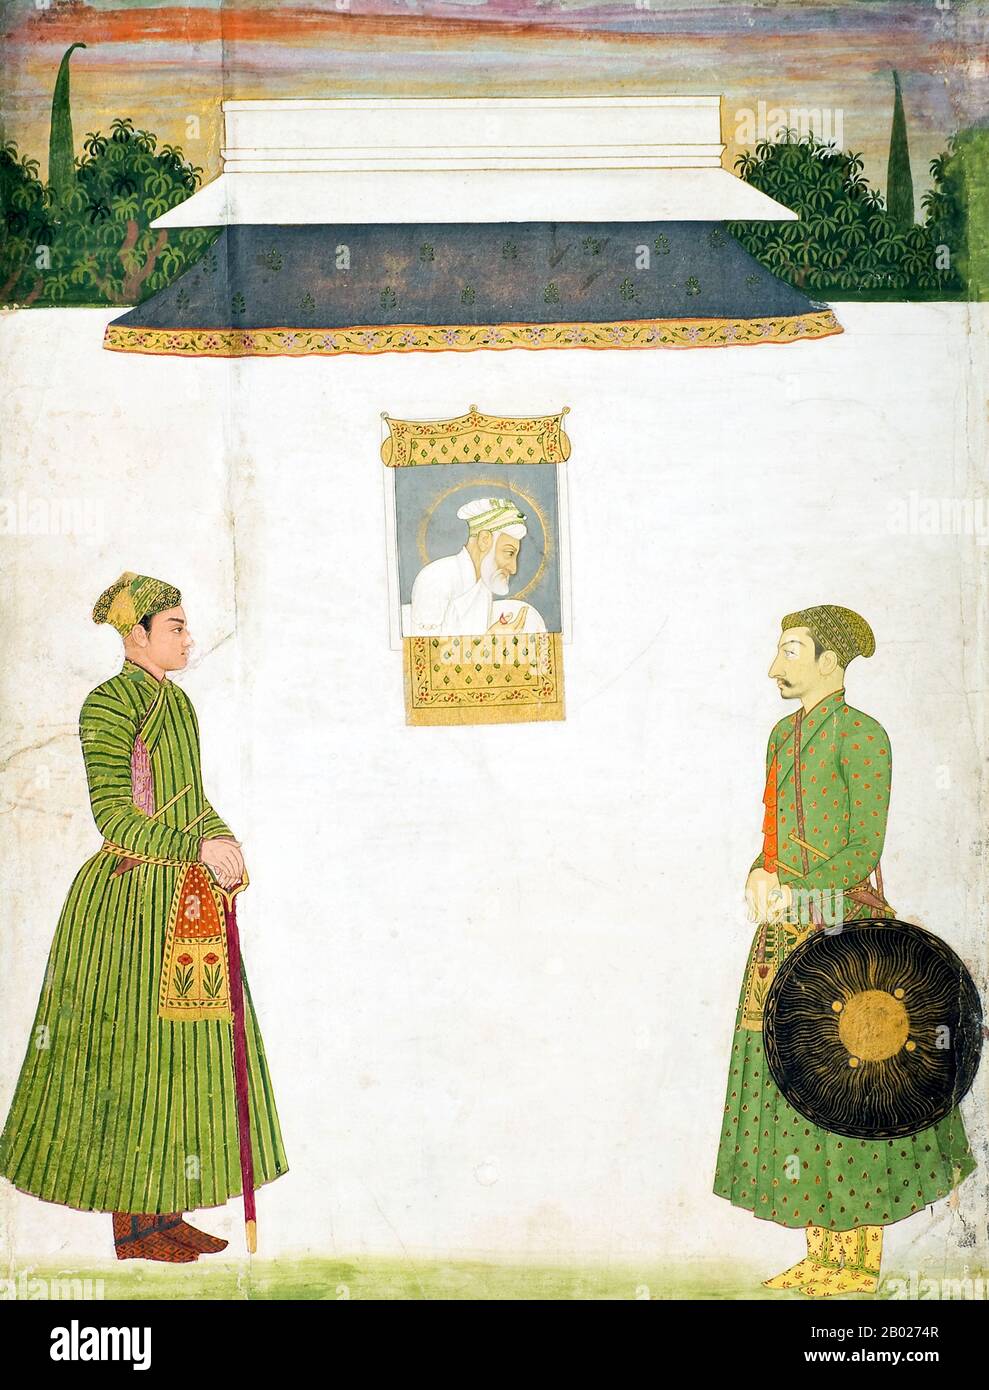 Abul Muzaffar Muhy-ud-Din Muhammad Aurangzeb Alamgir (Urdu: ابلمظفر- محىالدين - محمد اورنگزيب- عالمگیر, Hindi: अबुल मुज़फ्फर मुहिउद्दीन मुहम्मद औरंगज़ेब आलमगीर) (4 novembre 1618 – 3 mars 1707, plus connu sous le nom d'Aurangzeb (Hindi: औरंगज़ेब) ou par son titre impérial Alamgir (Hindi: आलमगीर) ('Conquerer of the World', Urdu: عالمگیر), fut le sixième empereur Mughal de l'Inde, dont le règne a duré de 1658 jusqu'à sa mort en 1707. Aurangzeb, ayant dirigé la plupart du sous-continent indien pendant près d'un demi-siècle, était le deuxième empereur moughal régnant le plus longtemps après Akbar. Banque D'Images